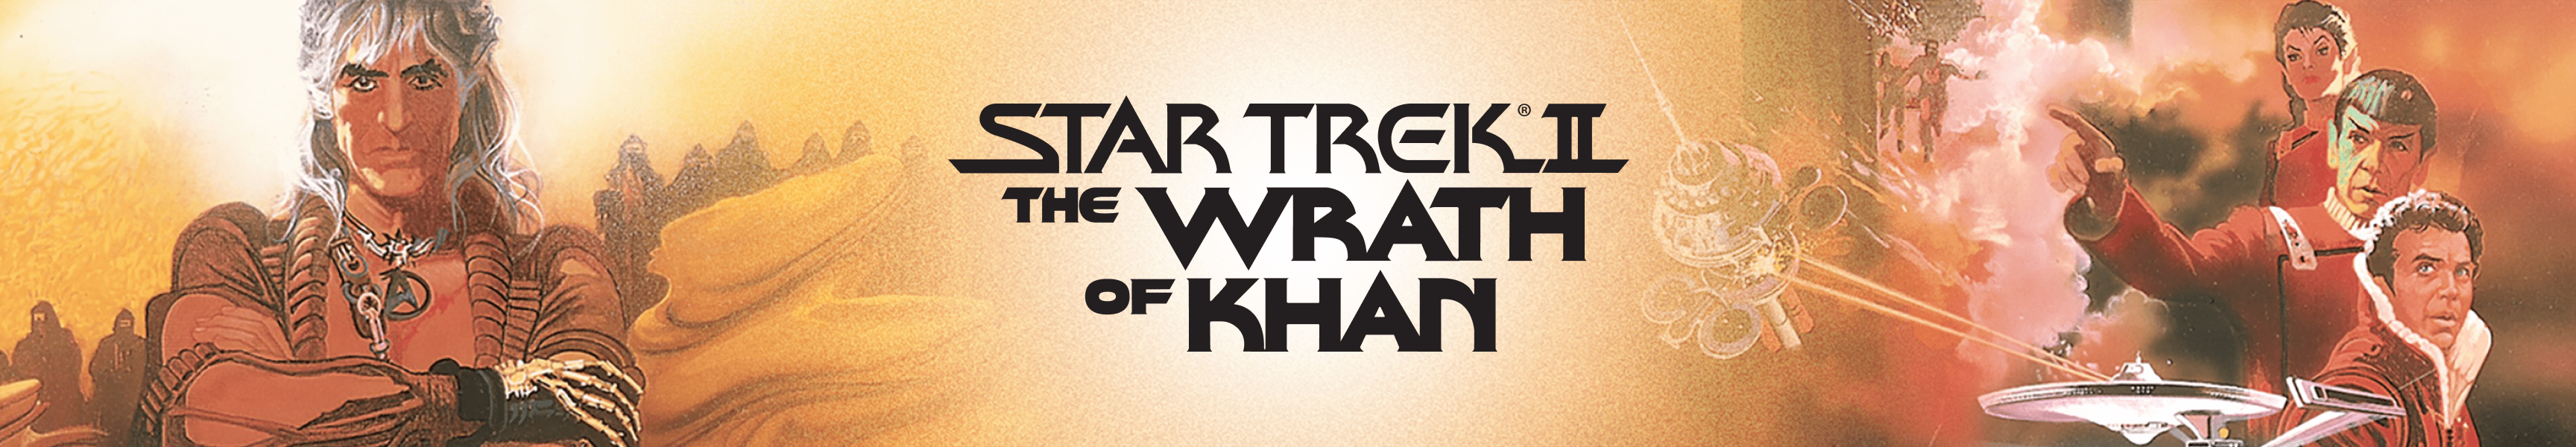 Star Trek II: La colère de Khan